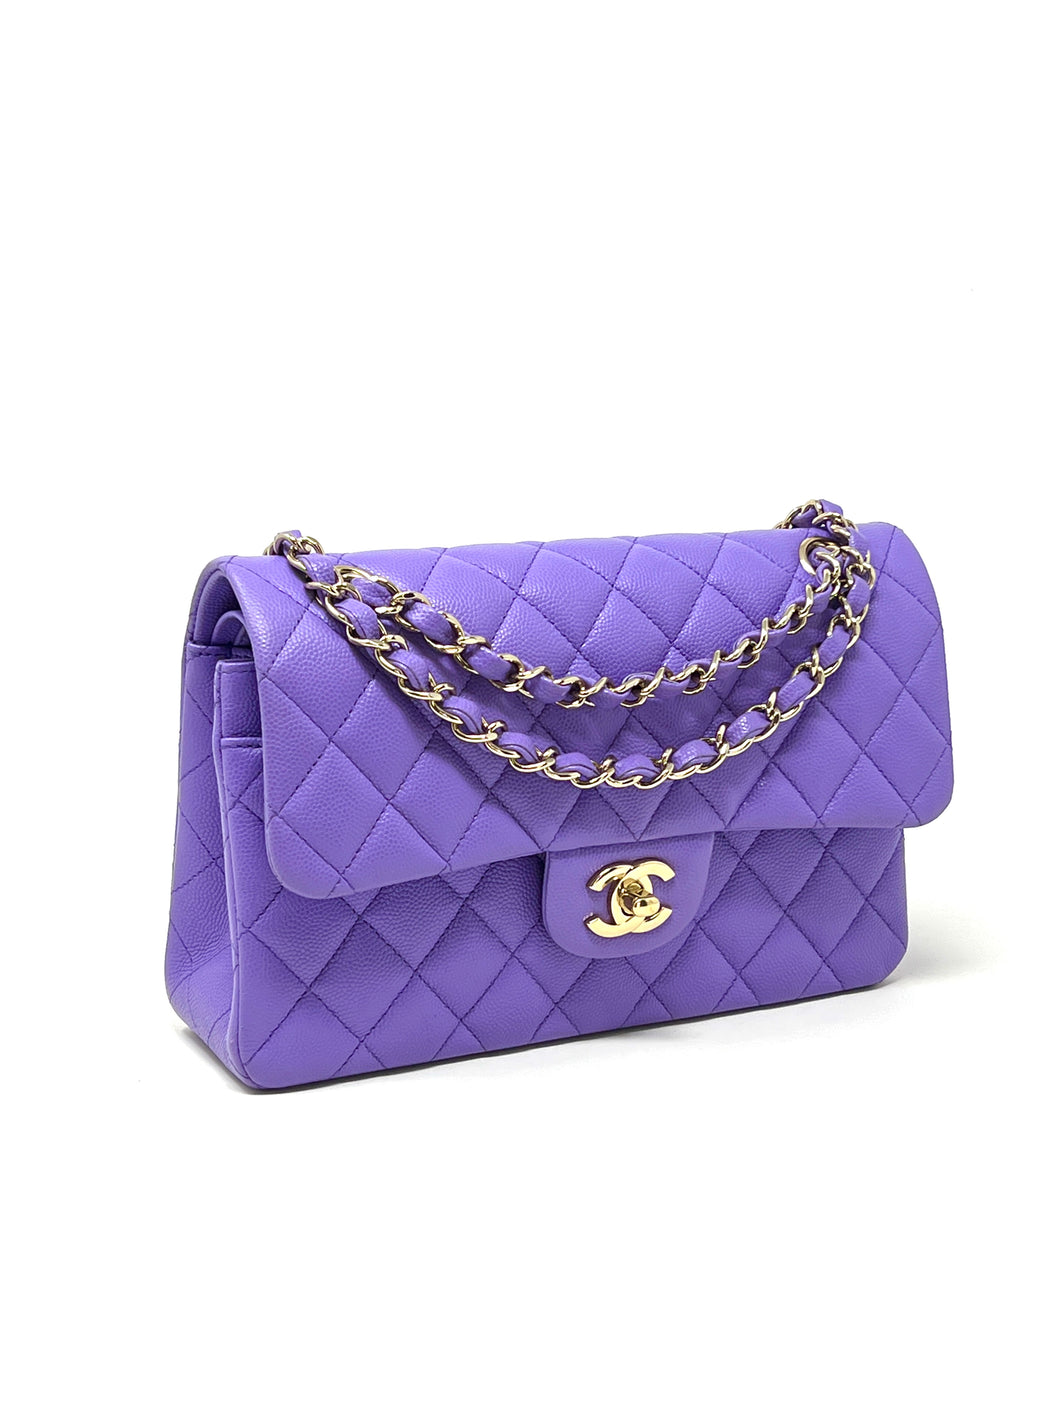  Chanel Women's Pre-Loved Chanel Purple Caviar